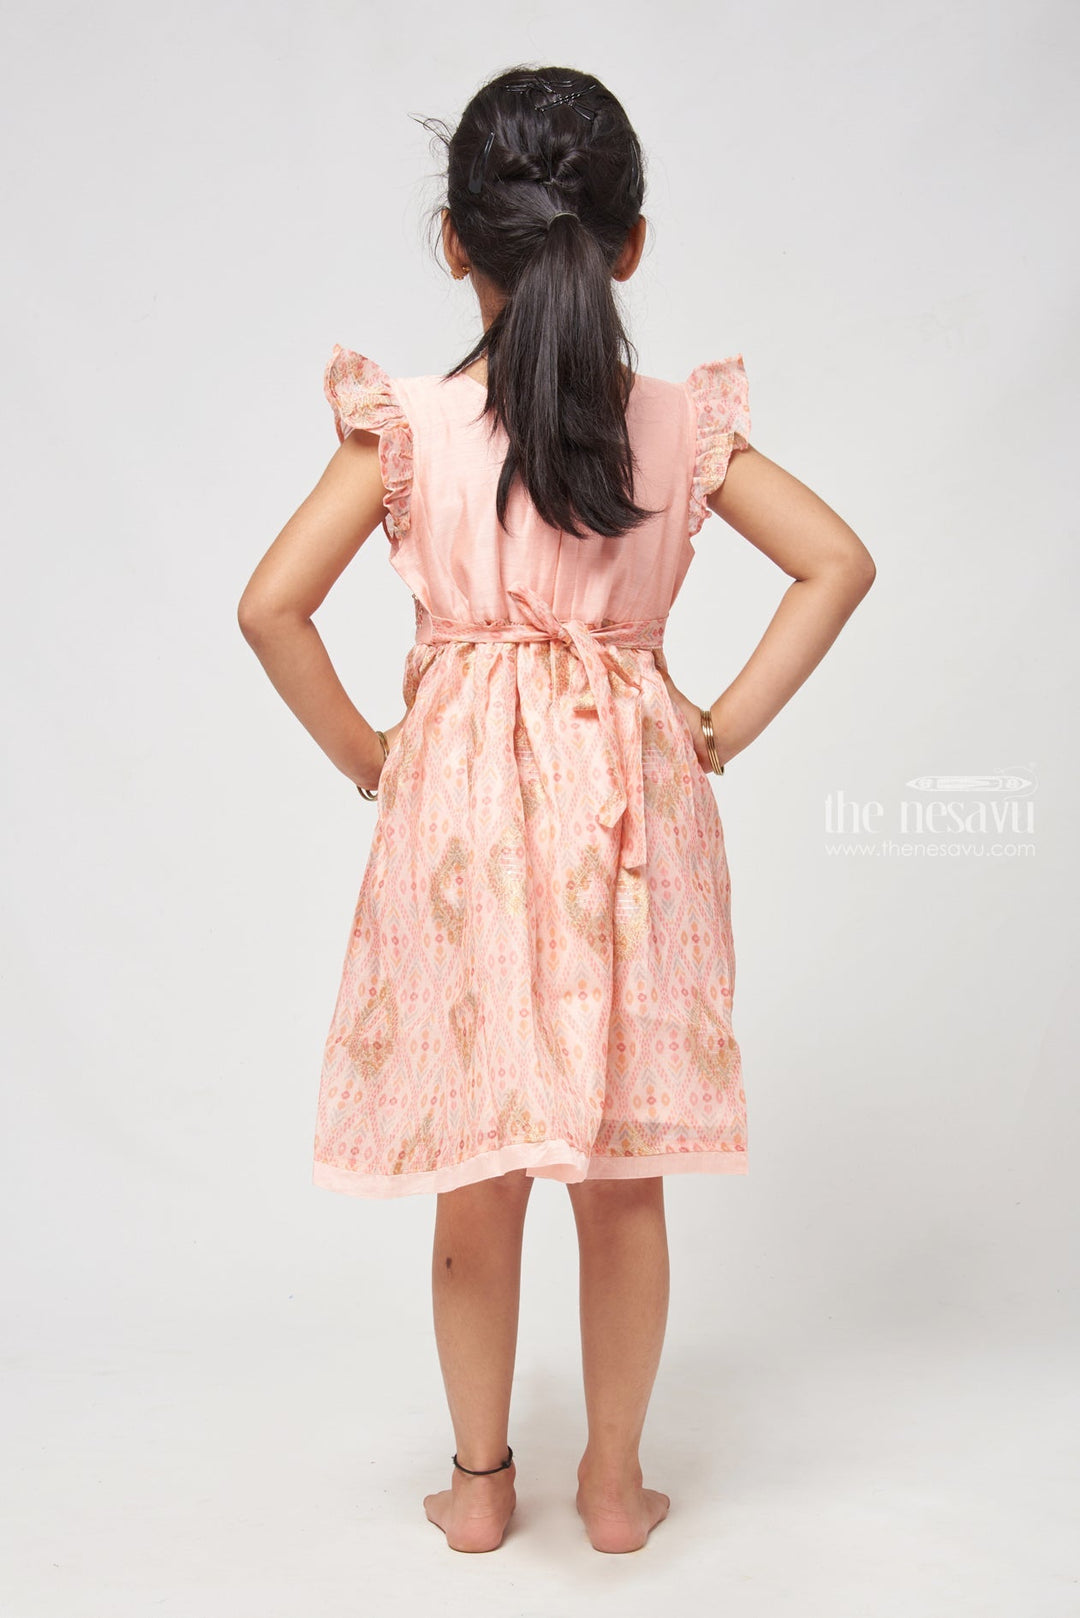 The Nesavu Girls Cotton Frock Charming Salmon Pink Block Printed Chanderi Frock - Stylish Girls Dress Nesavu Stylish Cotton Dresses | Comfortablr Cotton Frock For Girls | The Nesavu